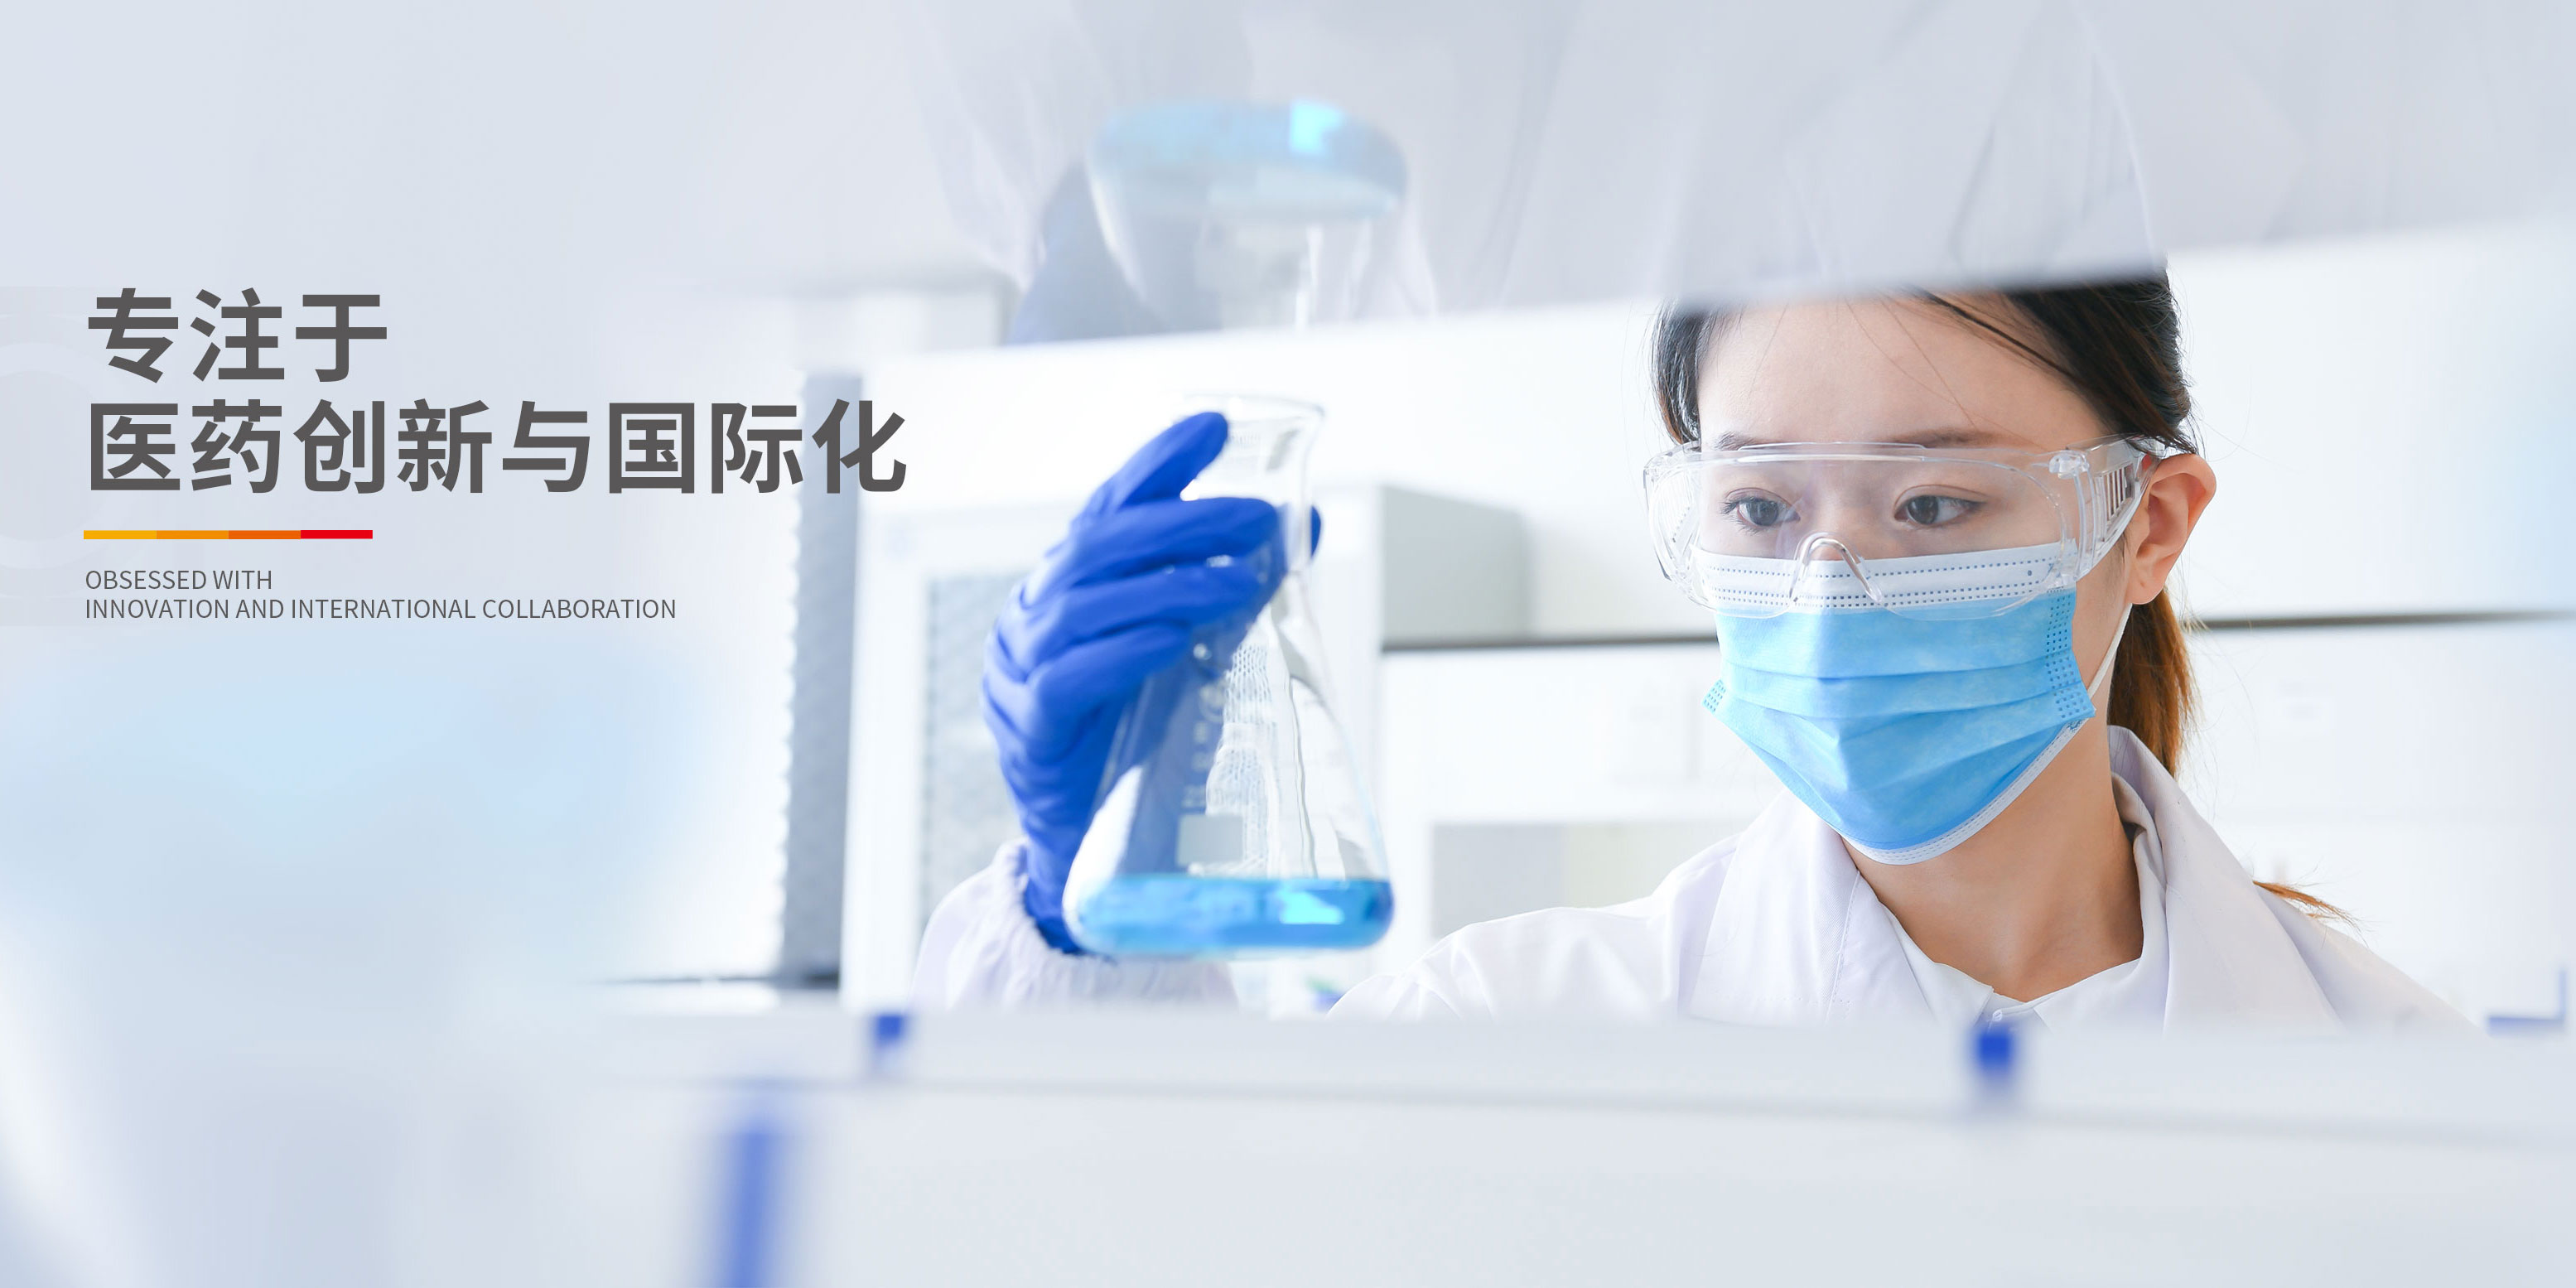 中國抗腫瘤、肝病領域的知名企業